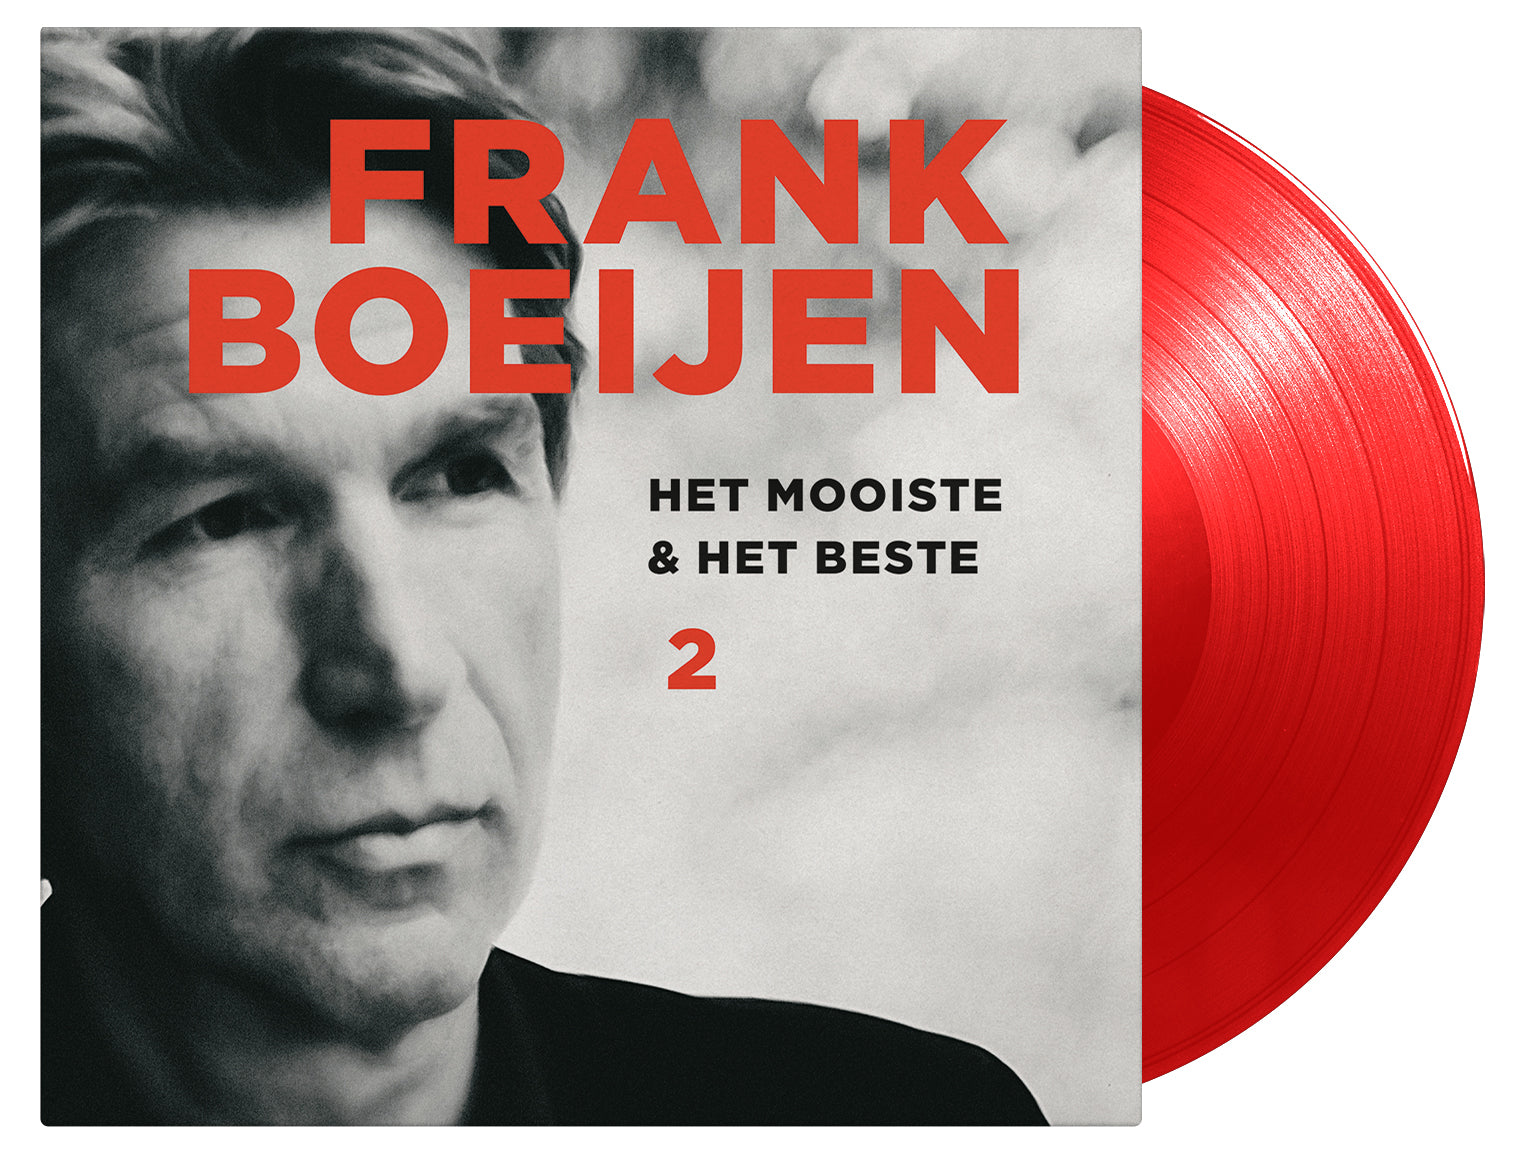 FRANK BOEIJEN - HET MOOISTE & HET BESTE 2